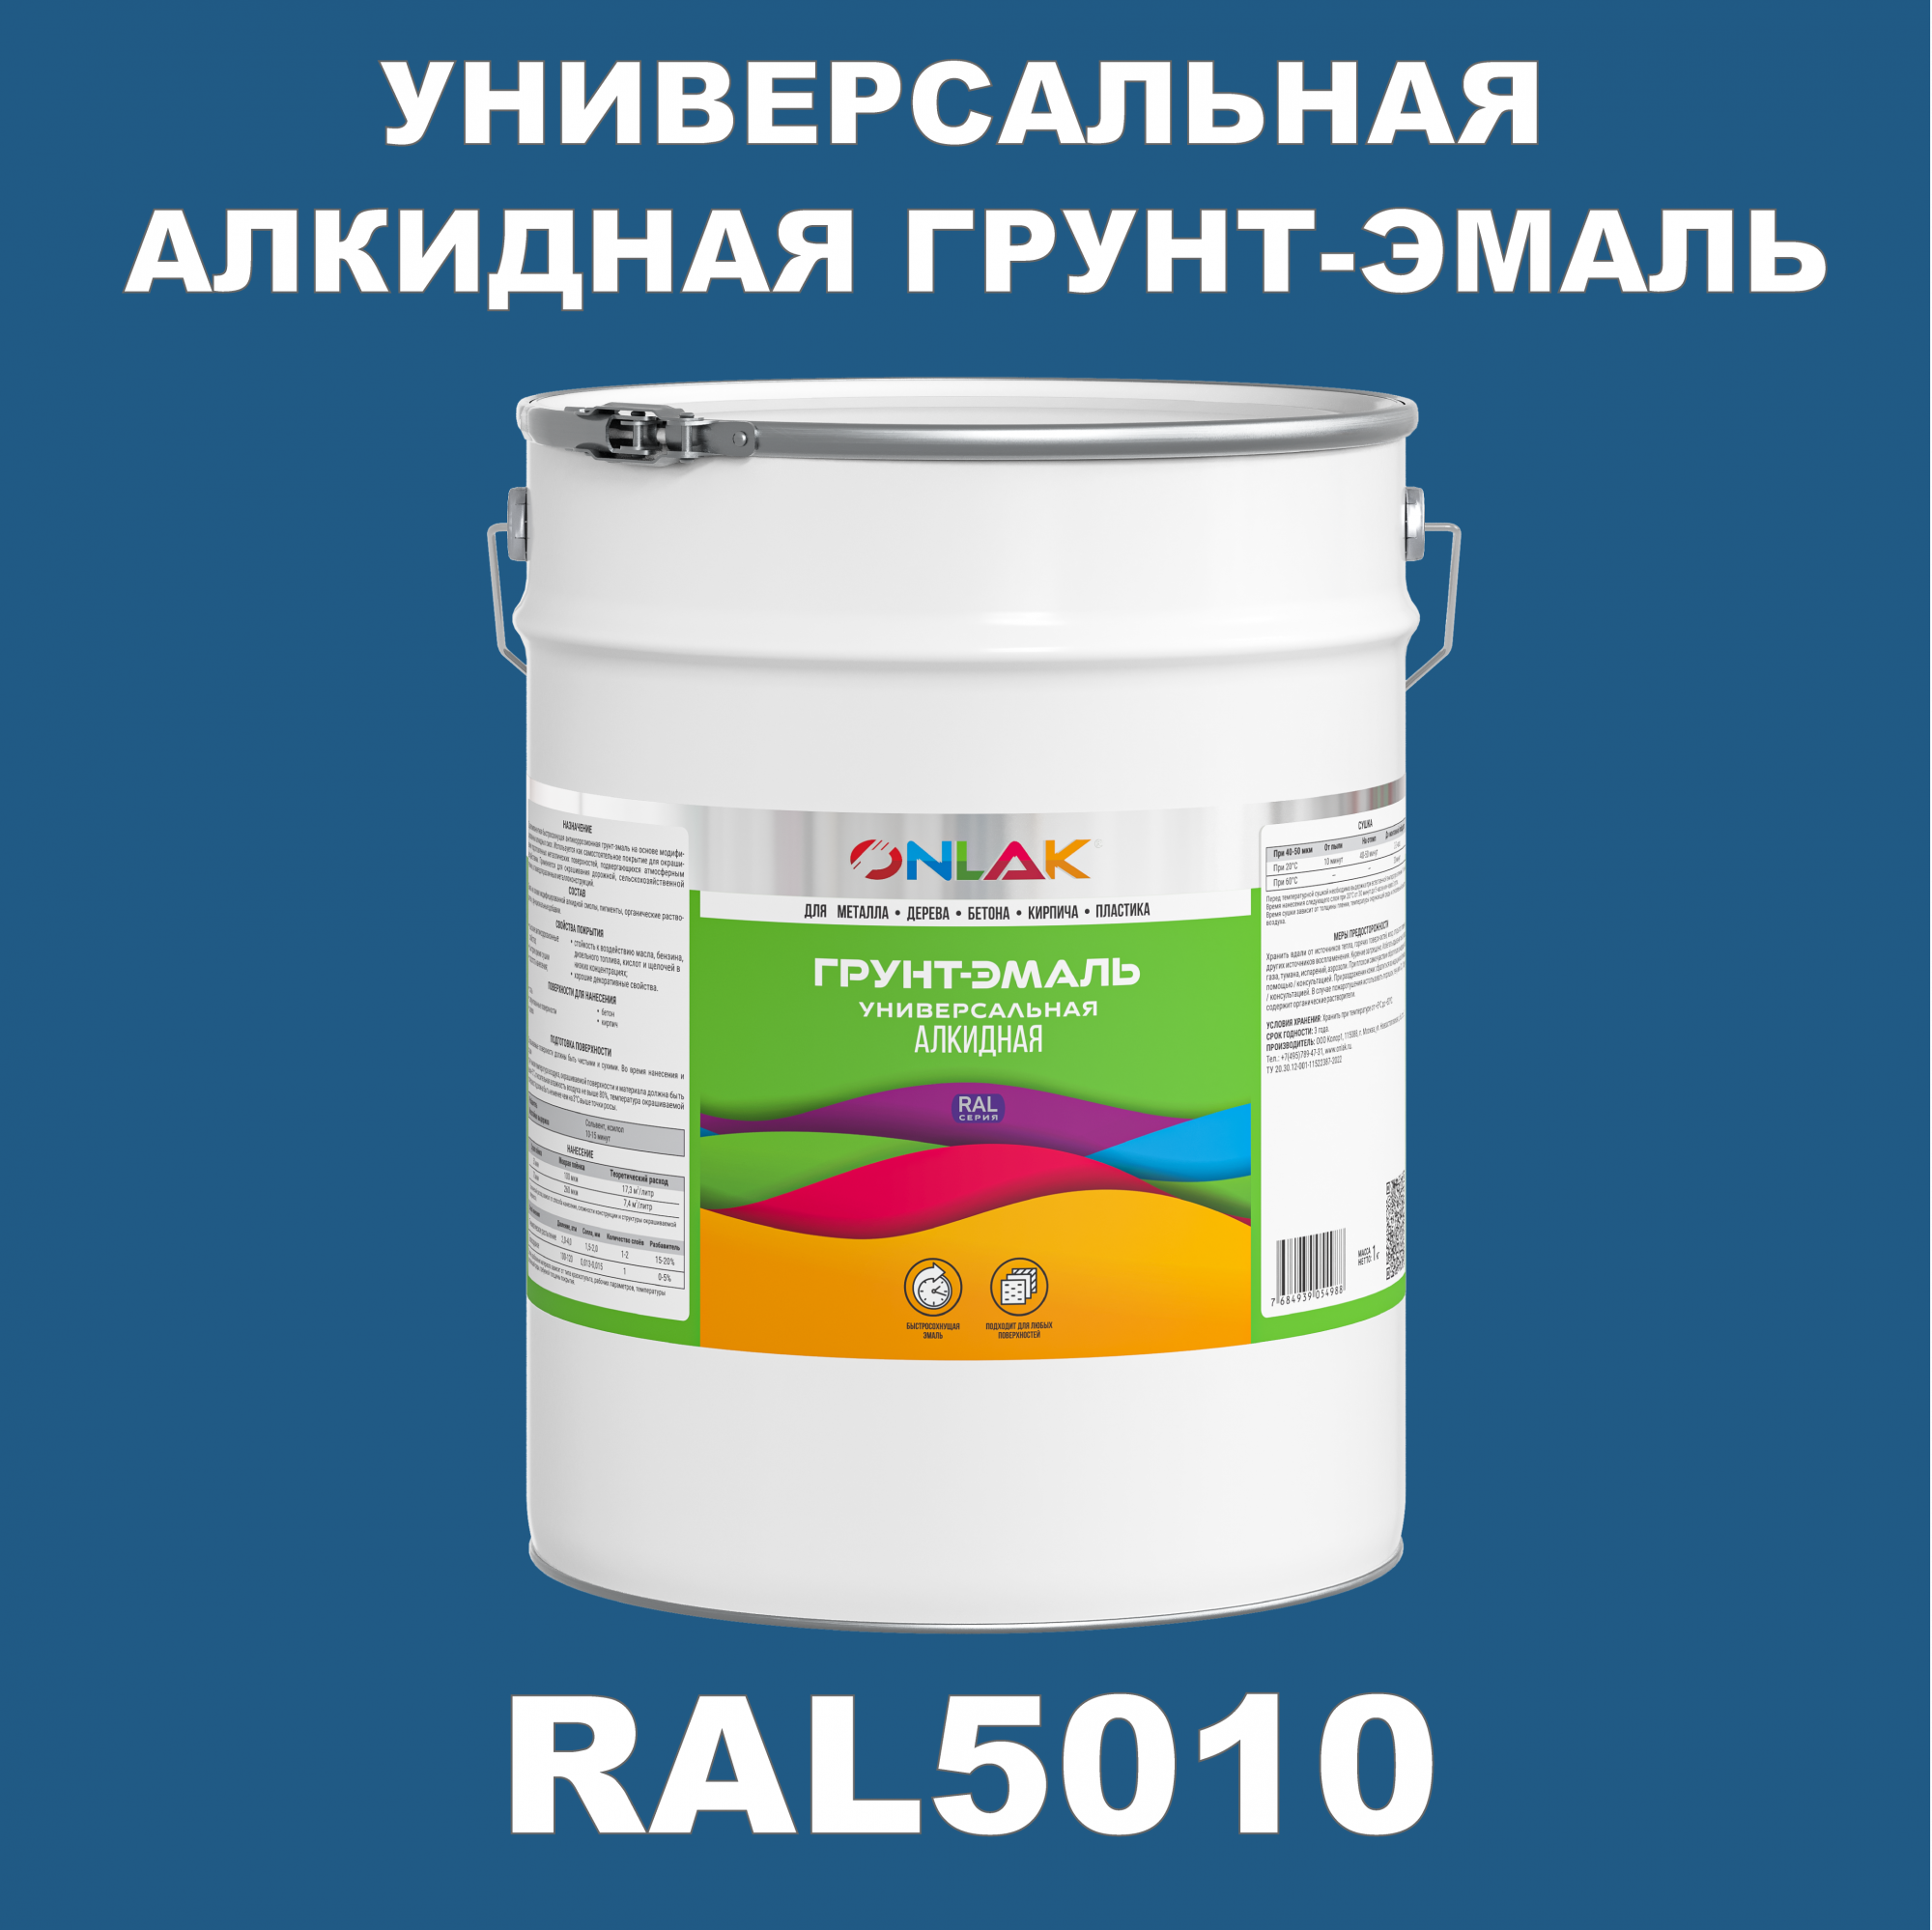 Грунт-эмаль ONLAK 1К RAL5010 антикоррозионная алкидная по металлу по ржавчине 20 кг грунт эмаль ореол титан по ржавчине алкидная зеленая ral 6005 0 9 кг